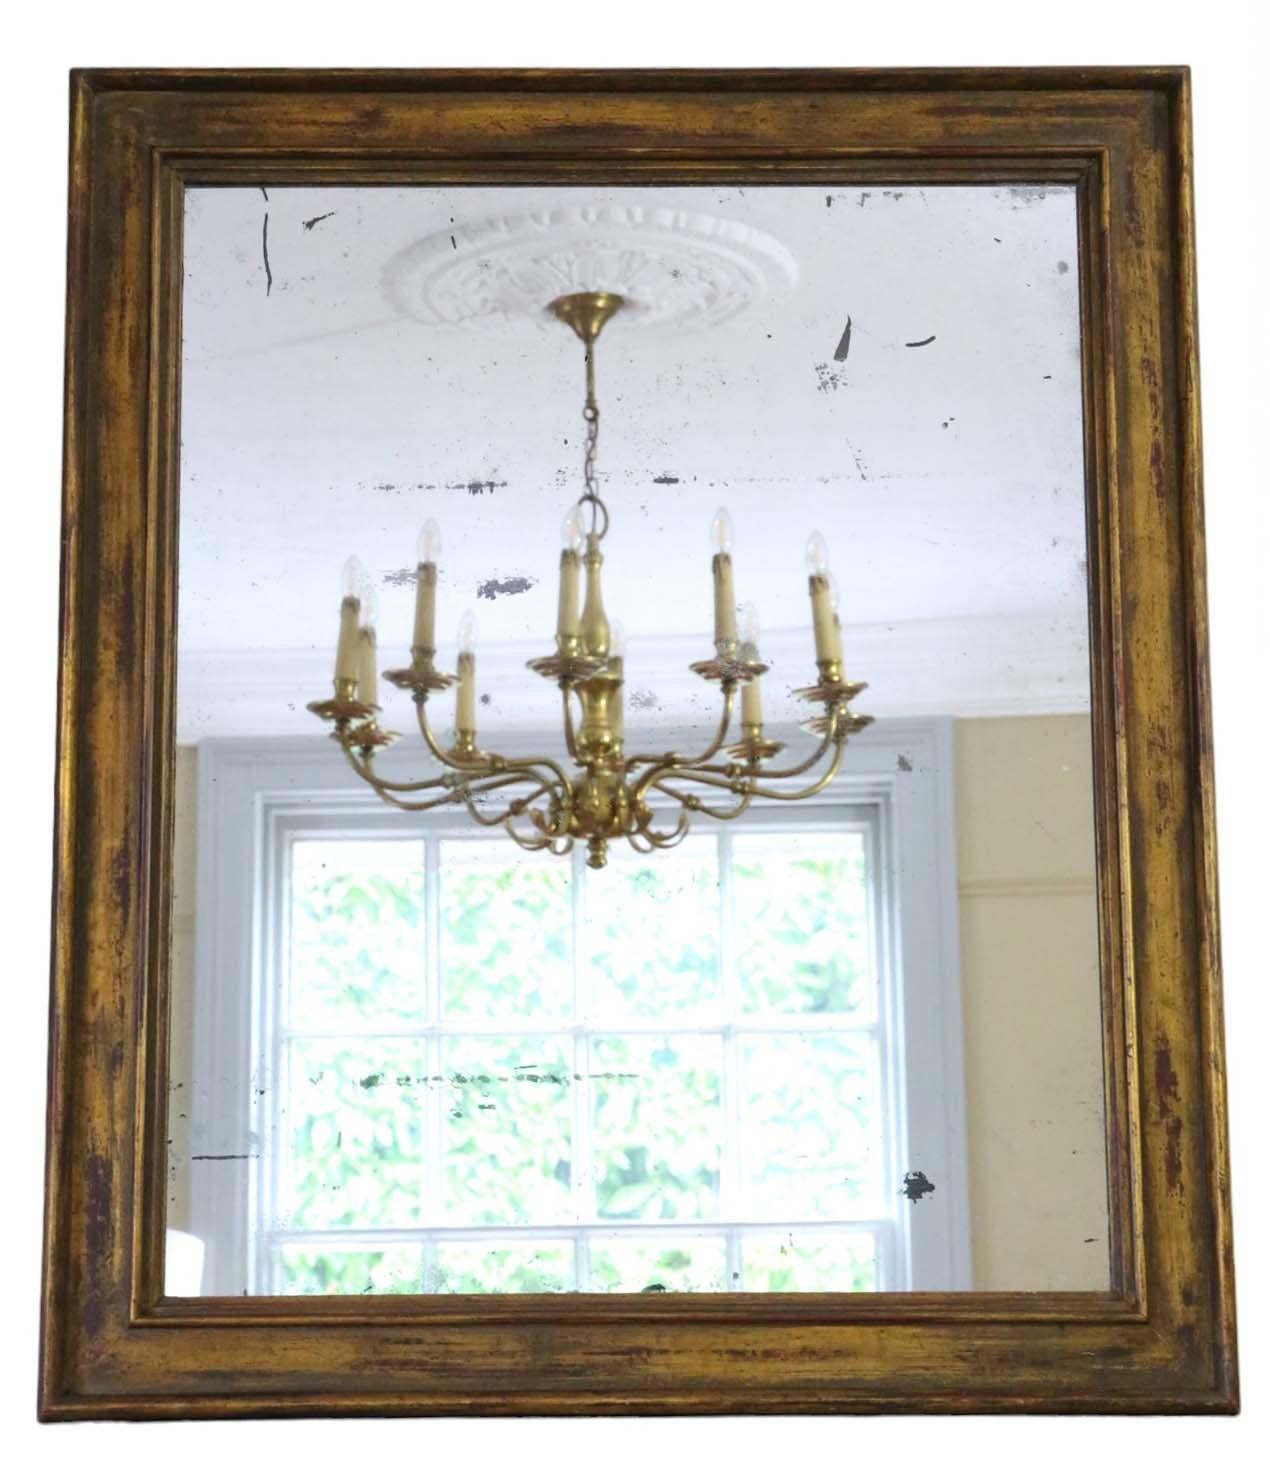 Grand miroir mural doré ancien du XIXe siècle, d'une grande qualité d'exécution.

Ce miroir séduit par son design simple mais saisissant, ajoutant du caractère à tout espace approprié. Le cadre est solide et ne présente pas de joints lâches ni de